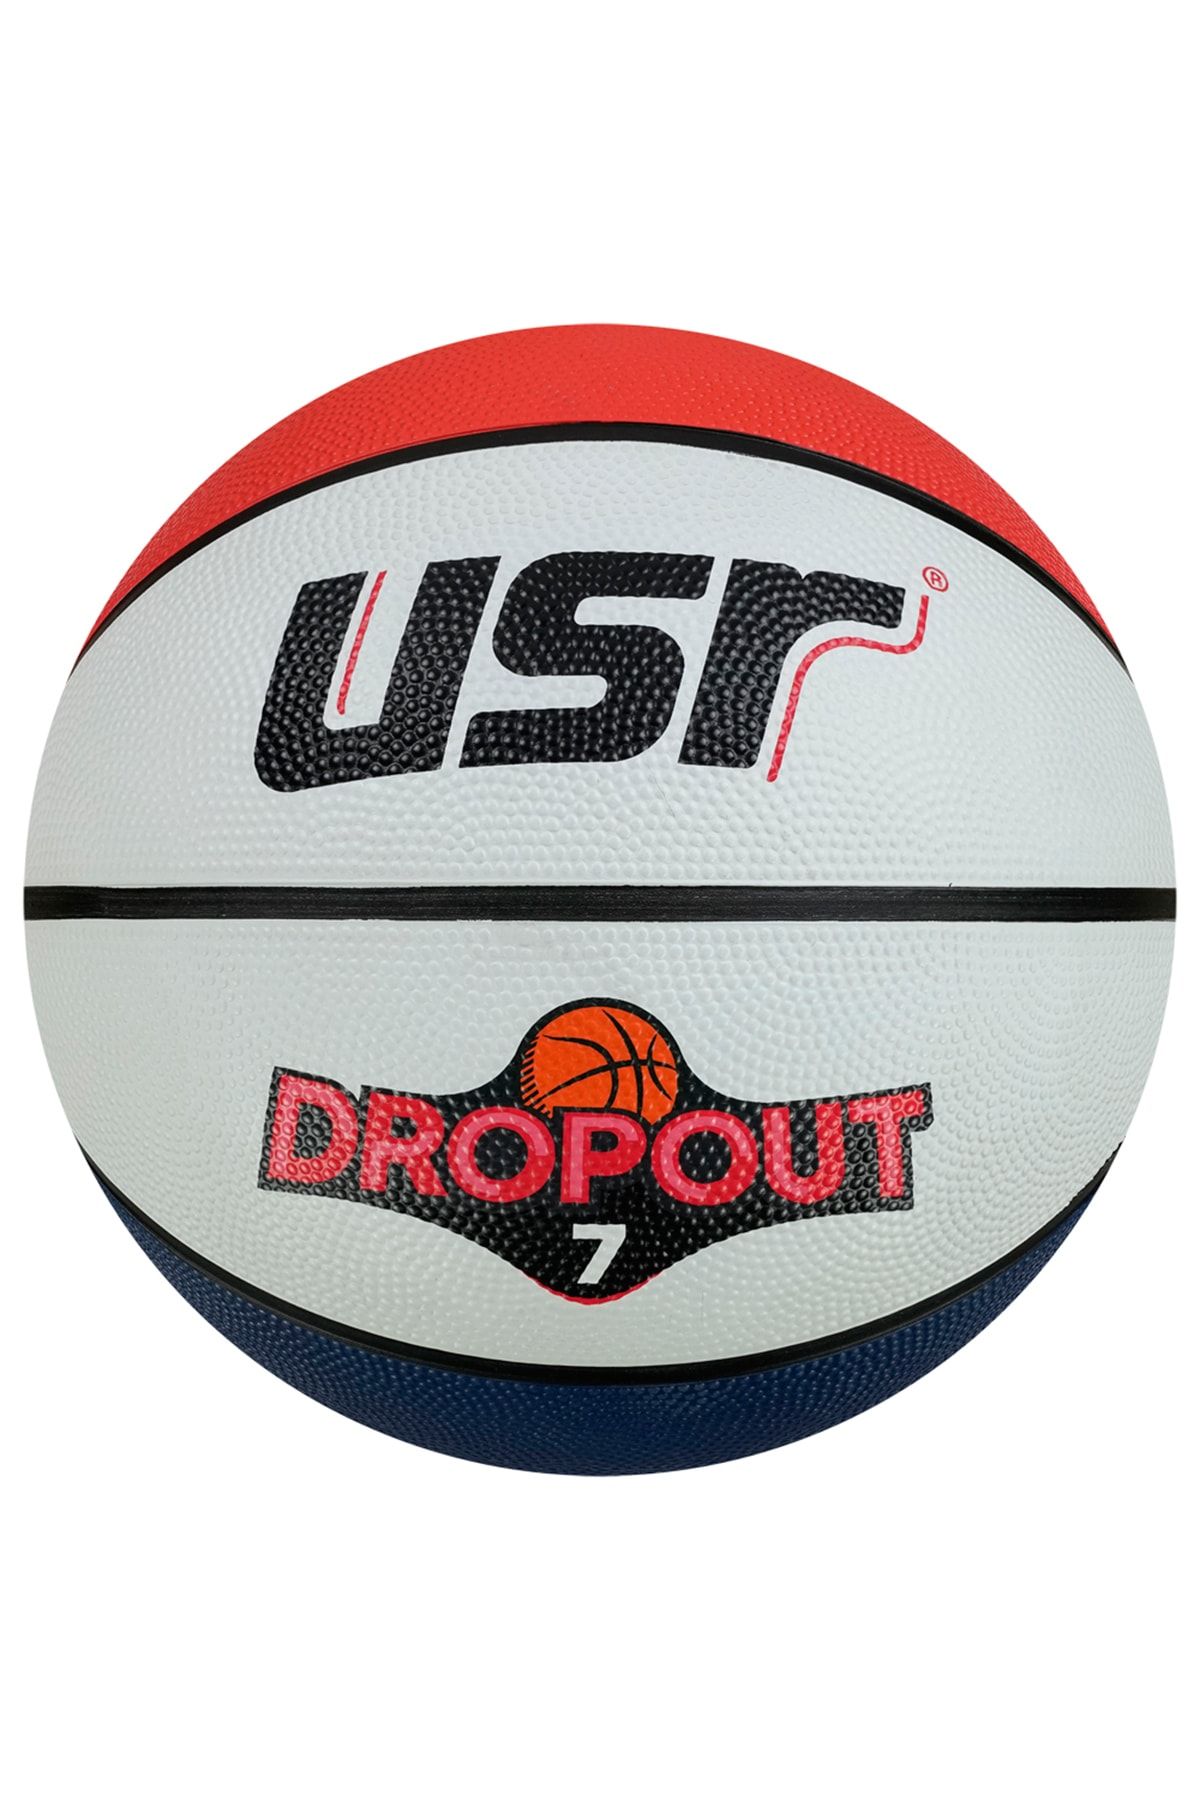 Usr Dropout7.2 7 No Basketbol Topu